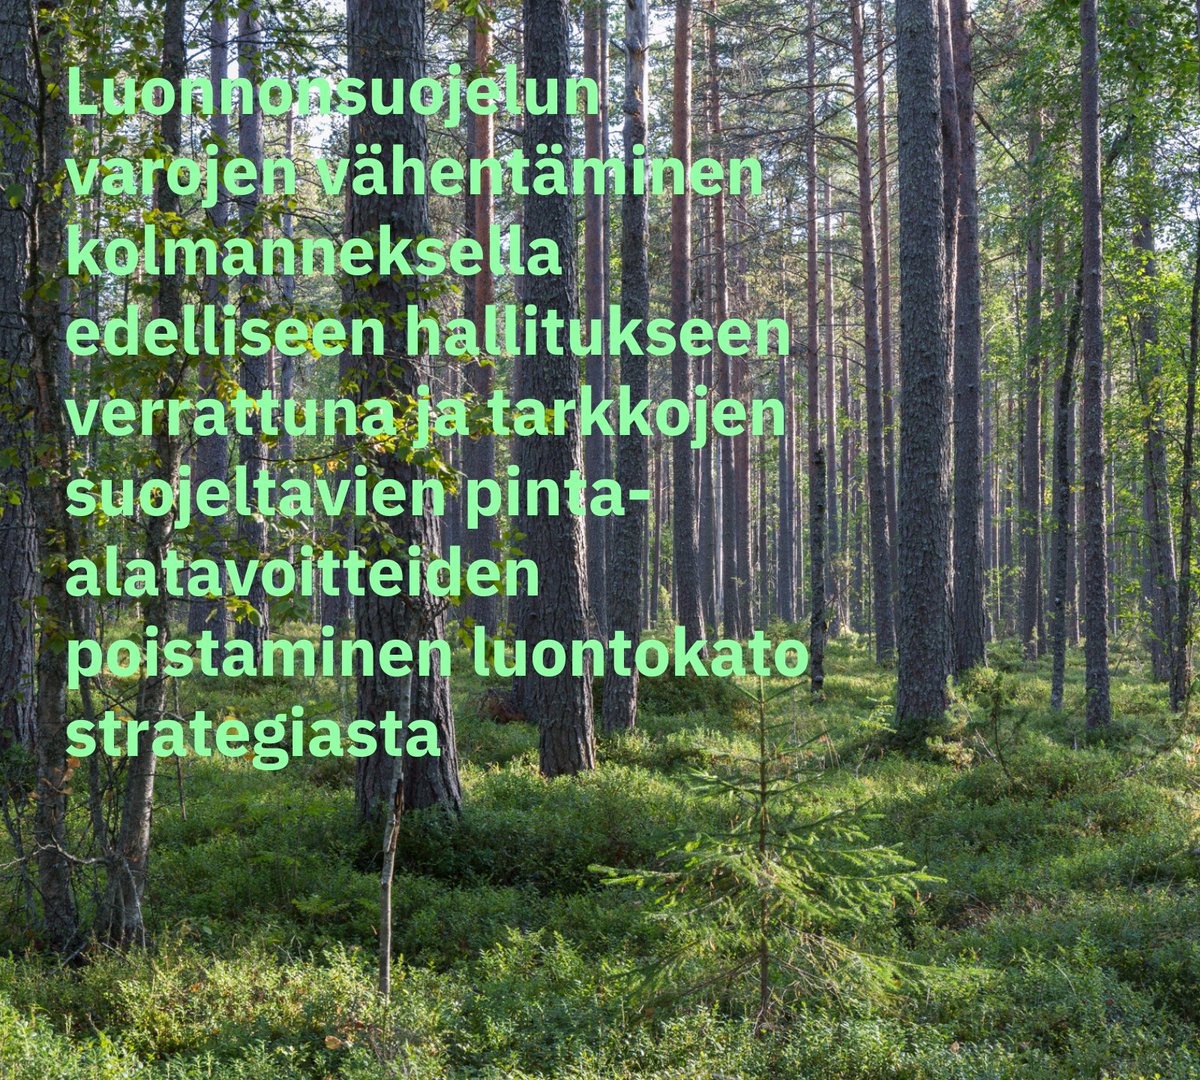 Luonnonsuojelun varojen vähentäminen kolmanneksella edelliseen hallitukseen verrattuna -  Luonnonsuojelun varojen vähentäminen tuntuu mm Metsähallituksen luontopalvelujen ennallistamistoimien rahoituksessa. Säästöt osuvat myös yksityisten metsien suojelun Metso-ohjelmaan.🧵